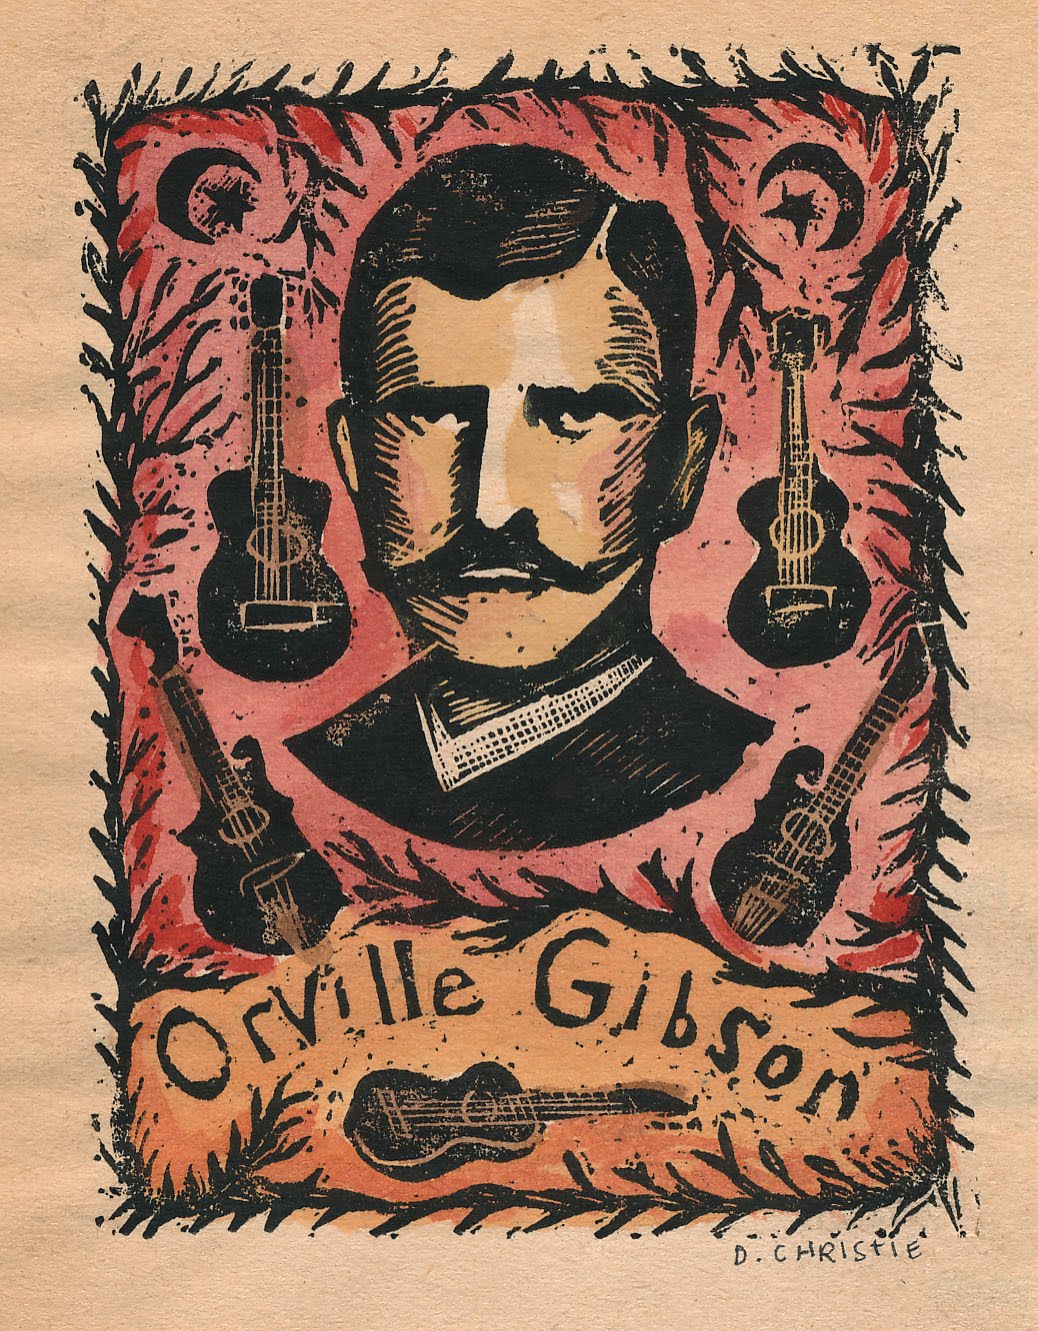 Orville Gibson